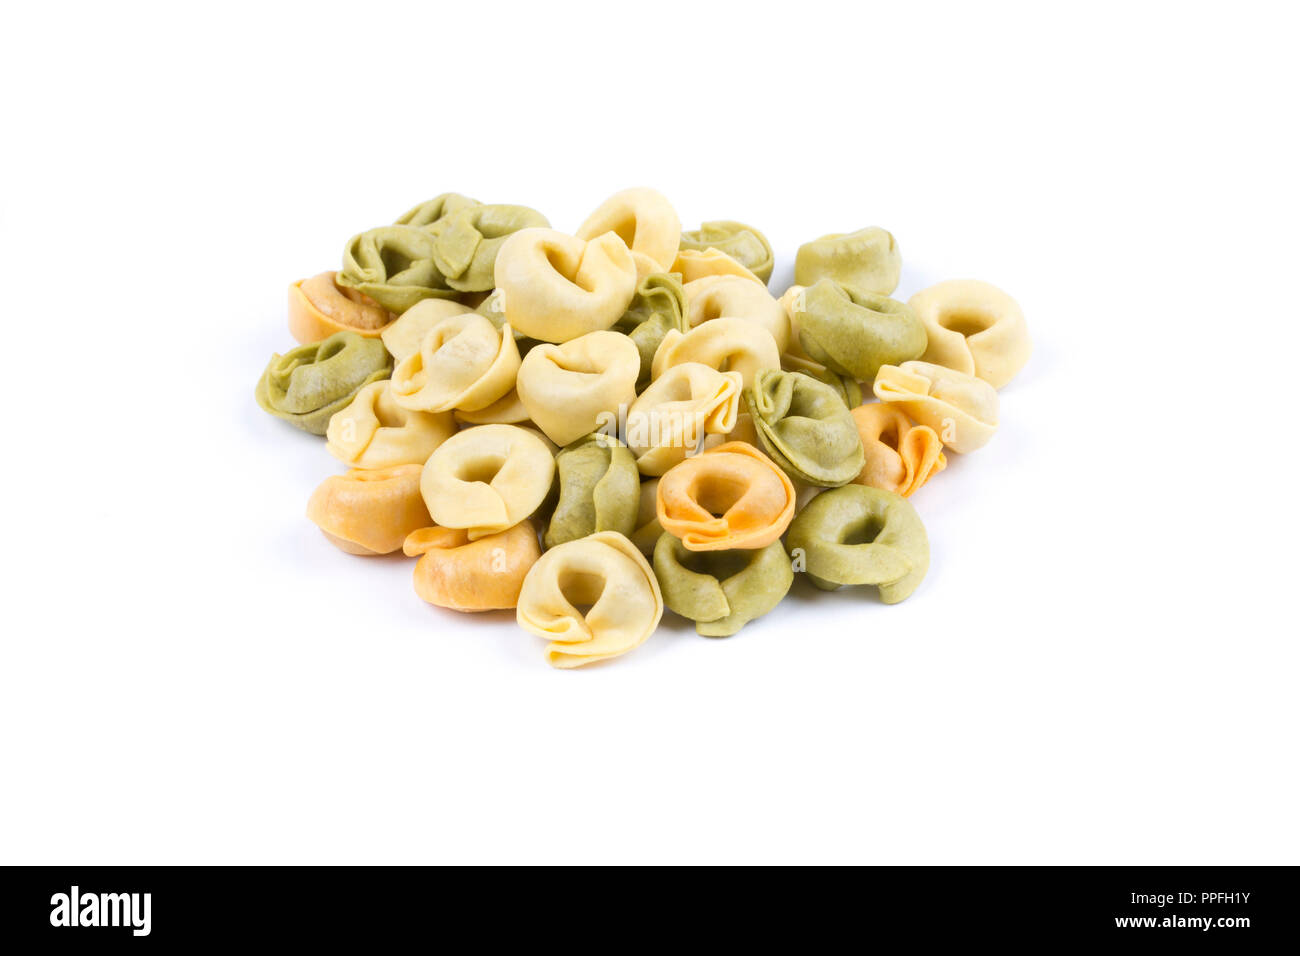 Uncooked pasta Stock Photo